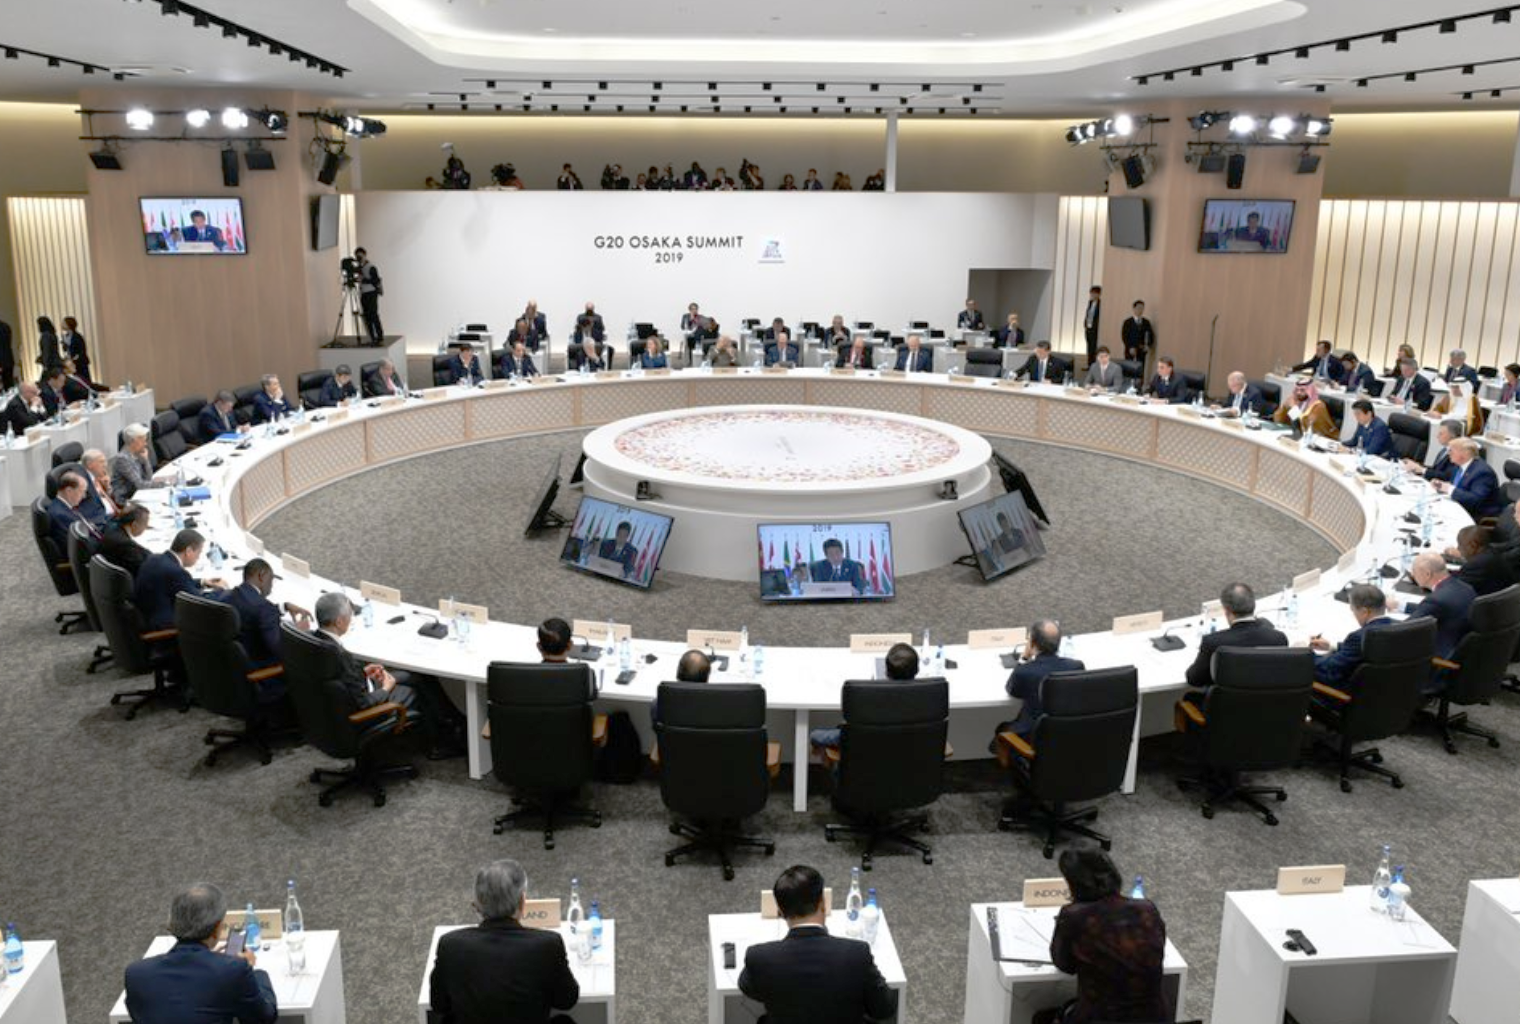 G20-ledere utsteder erklæring om kryptoaktiva - en titt på deres forpliktelser